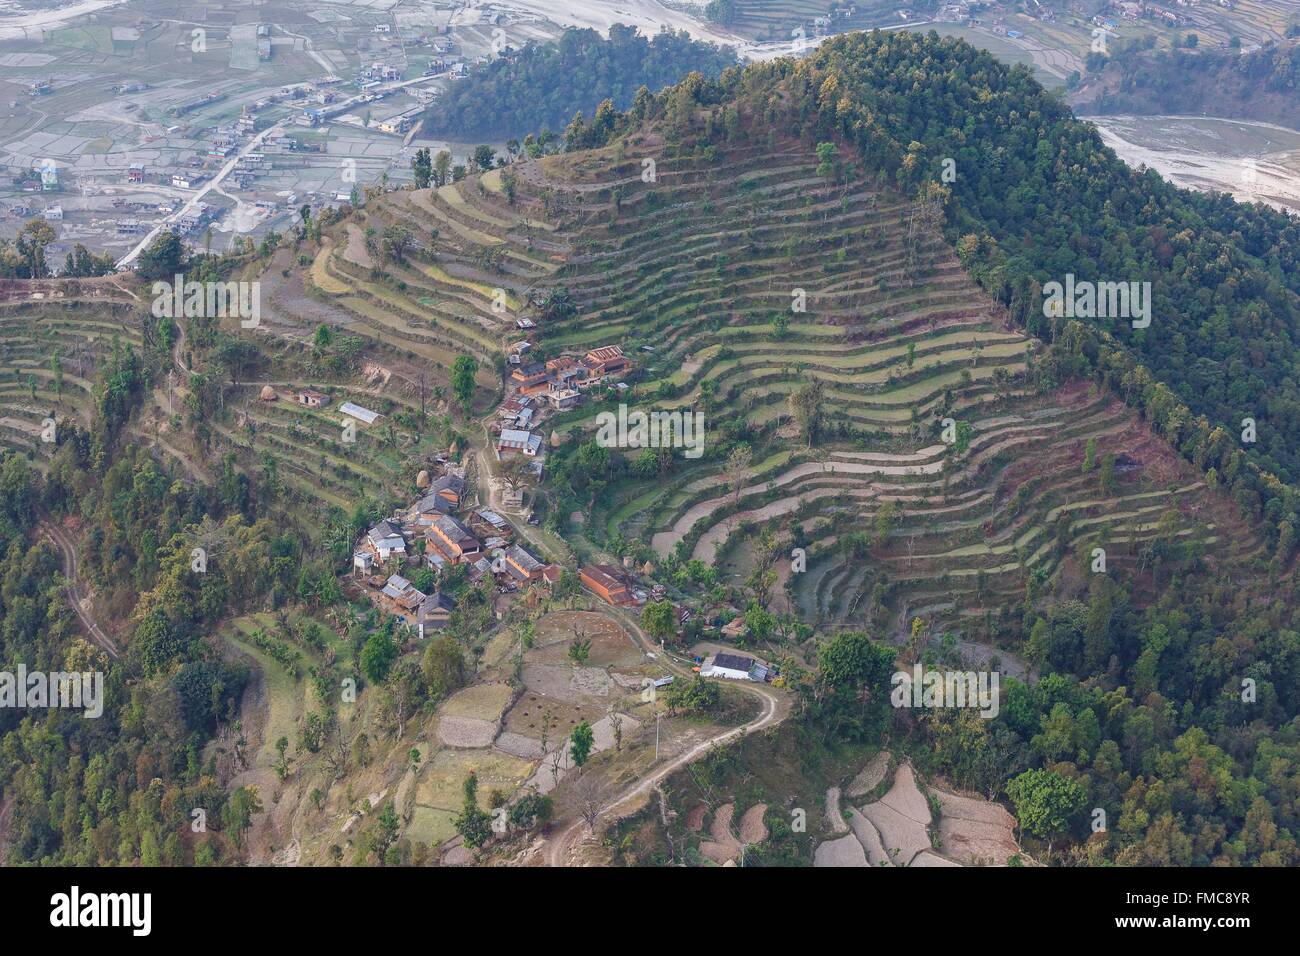 Le Népal, Gandaki zone, Pokhara, Kaskikot village et les rizières en terrasse (vue aérienne) Banque D'Images